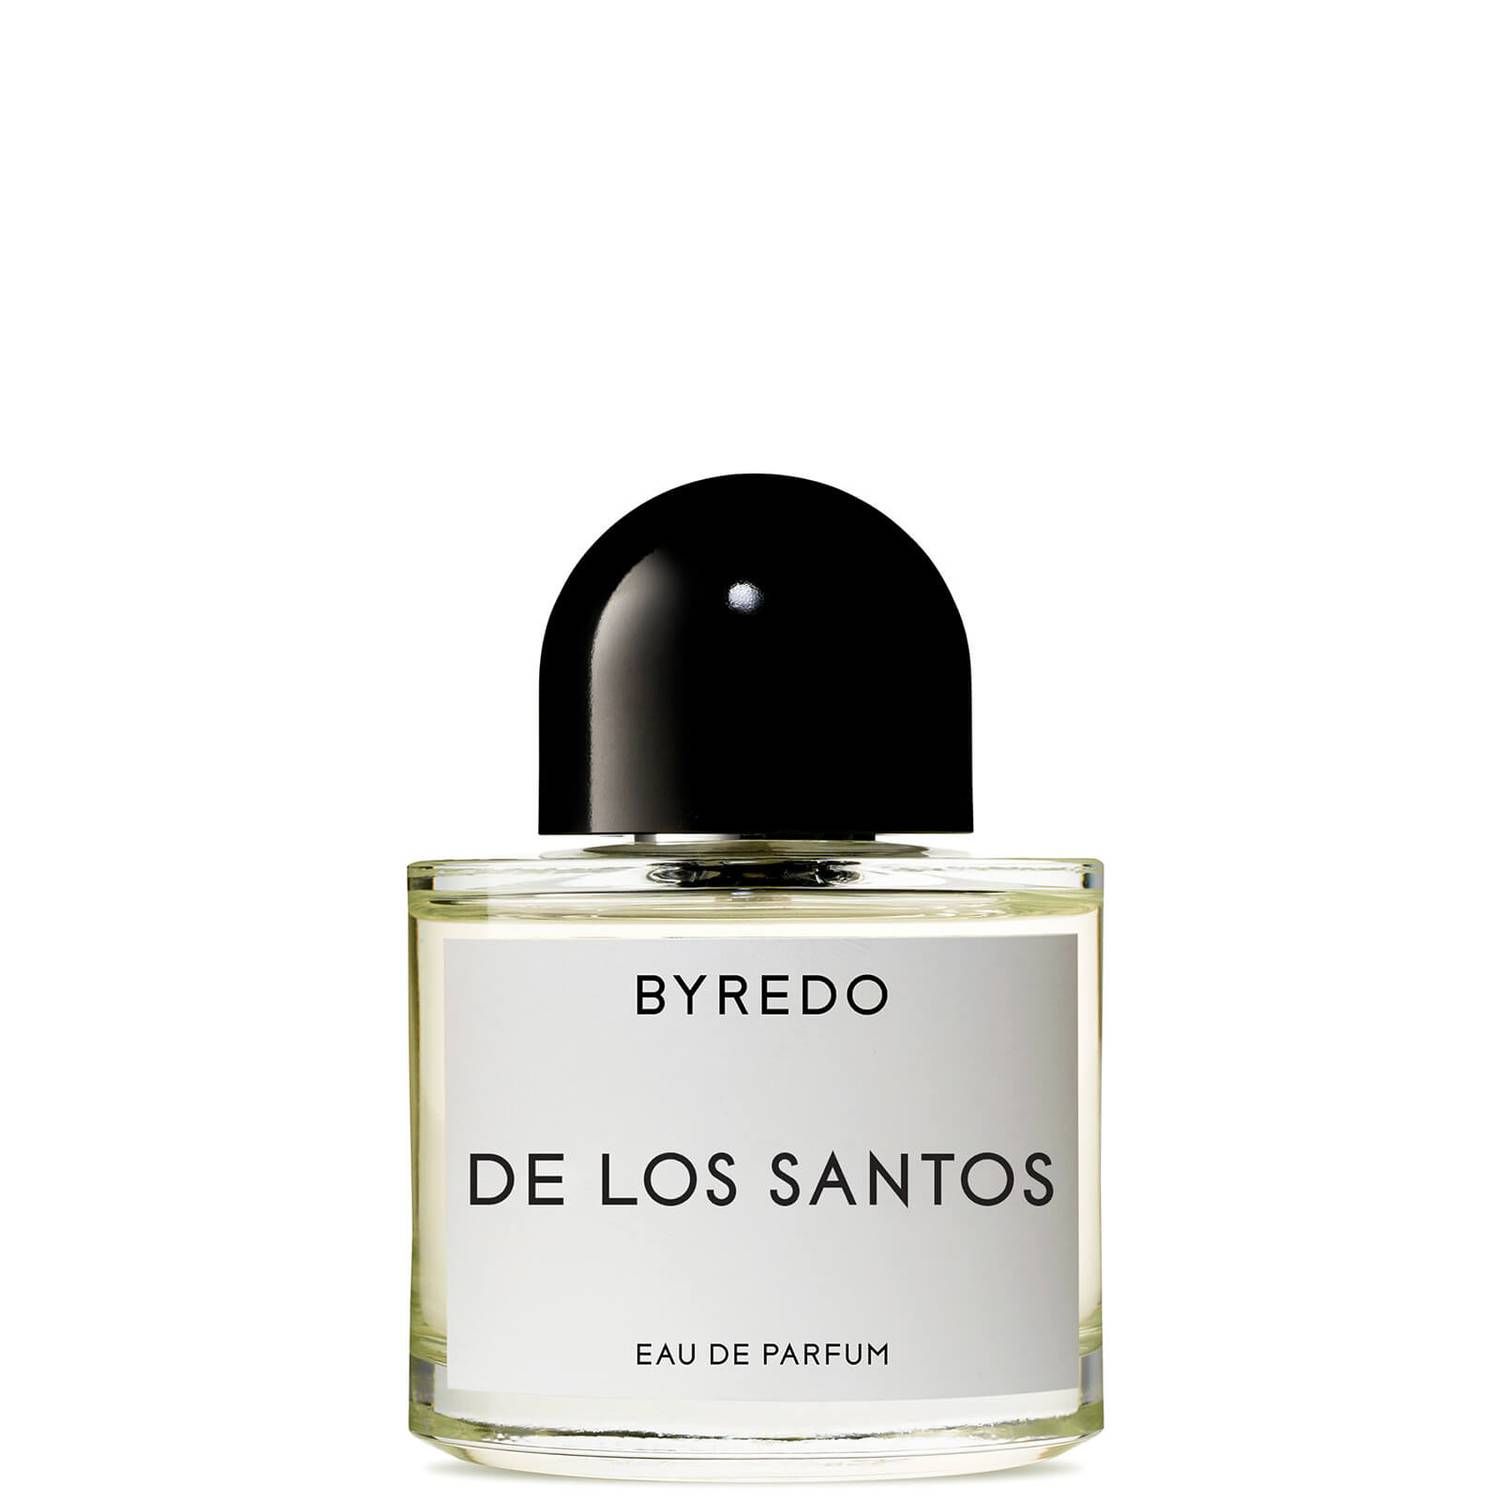 BYREDO De Los Santos Eau de Parfum 50ml | Cult Beauty